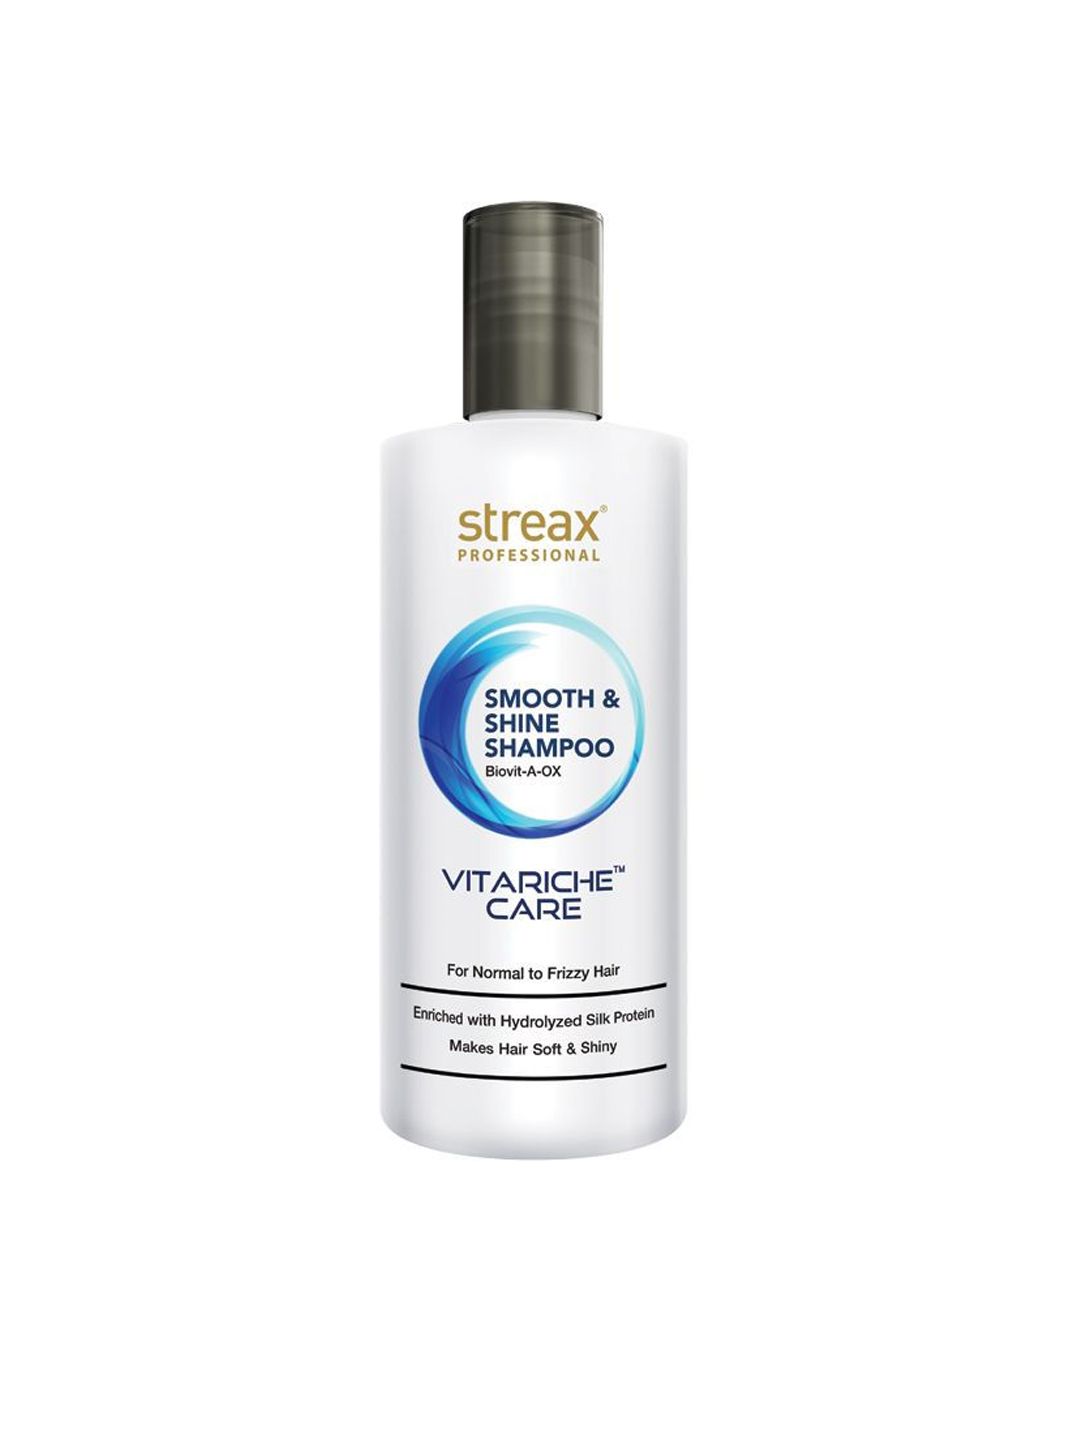 Streax Professional Vitariche Care Smooth & Shine Shampoo 300 ml Price in India